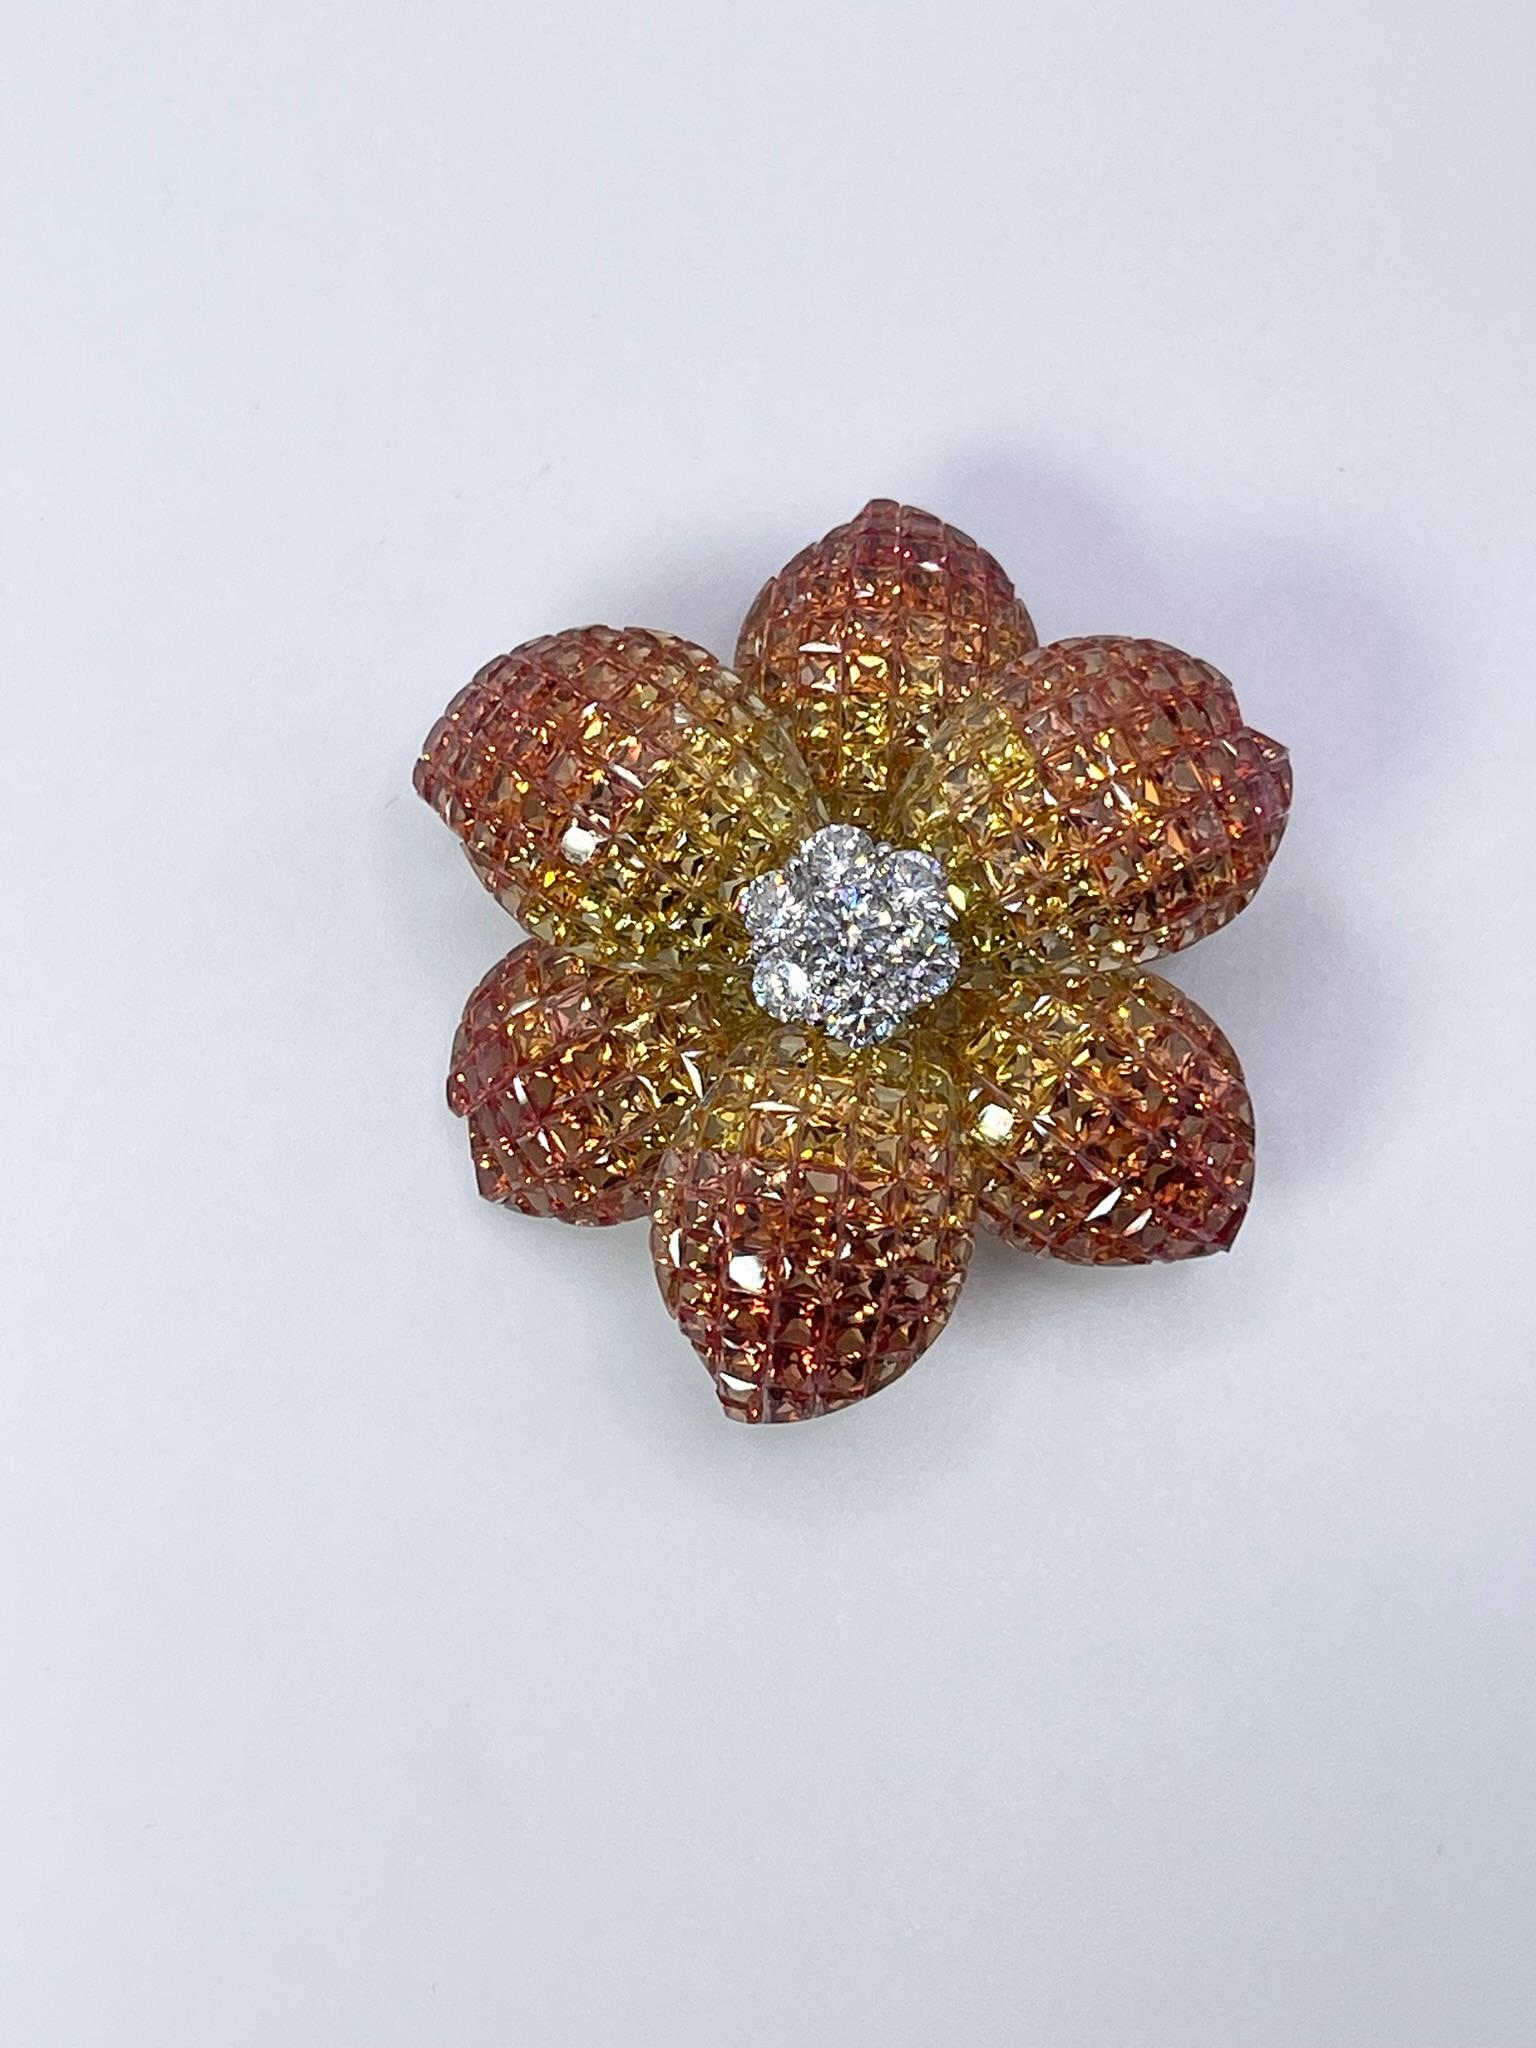 Luxuriöse Blumenbrosche mit natürlichen Saphiren und Diamanten aus 18 Kt Weißgold. Die seltene Art der Fassung wird als unsichtbare Fassung bezeichnet und zeigt kein Metall, sondern nur Steine. 

Grammgewicht: 25.07gr
GOLD: 18KT Weißgold
GRÖSSE: ca.